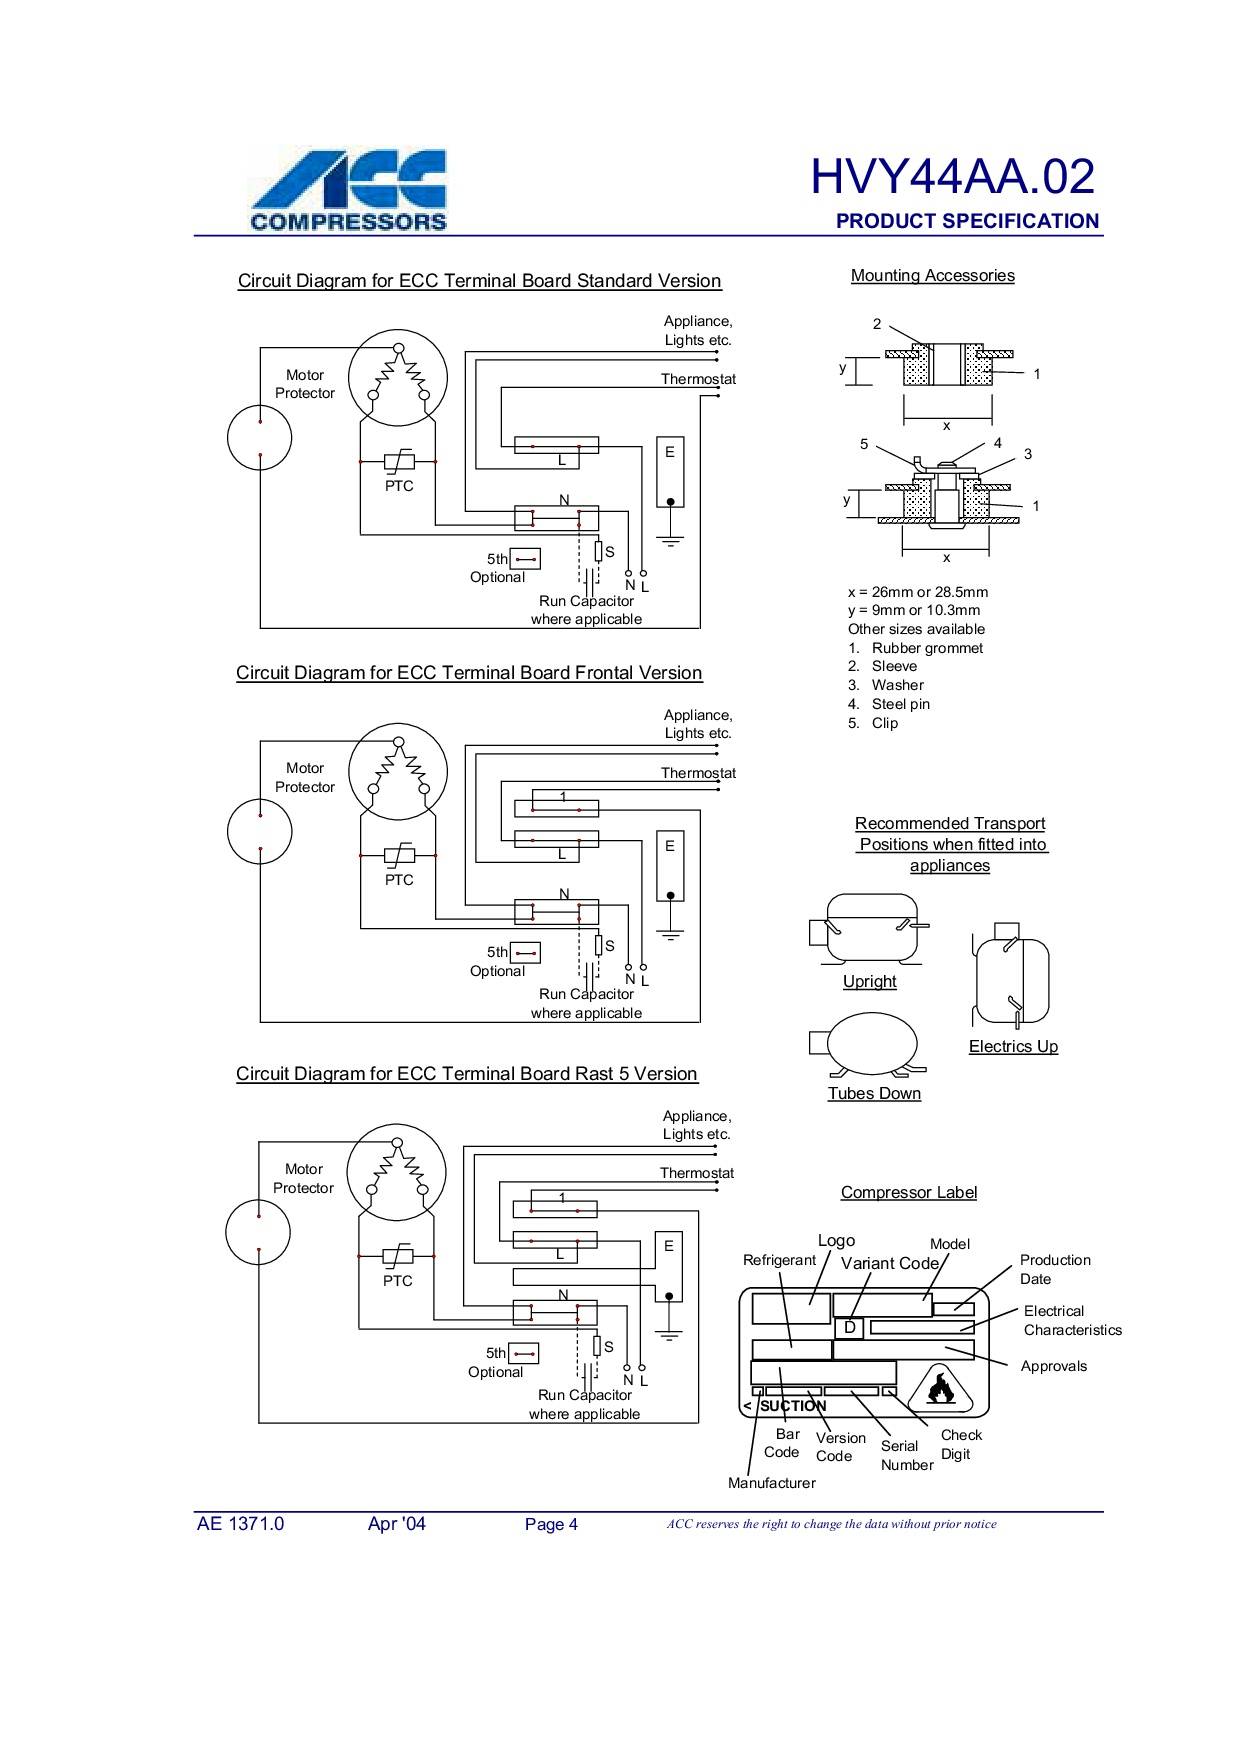 Схема подключения компрессора холодильника с конденсатором и напрямую